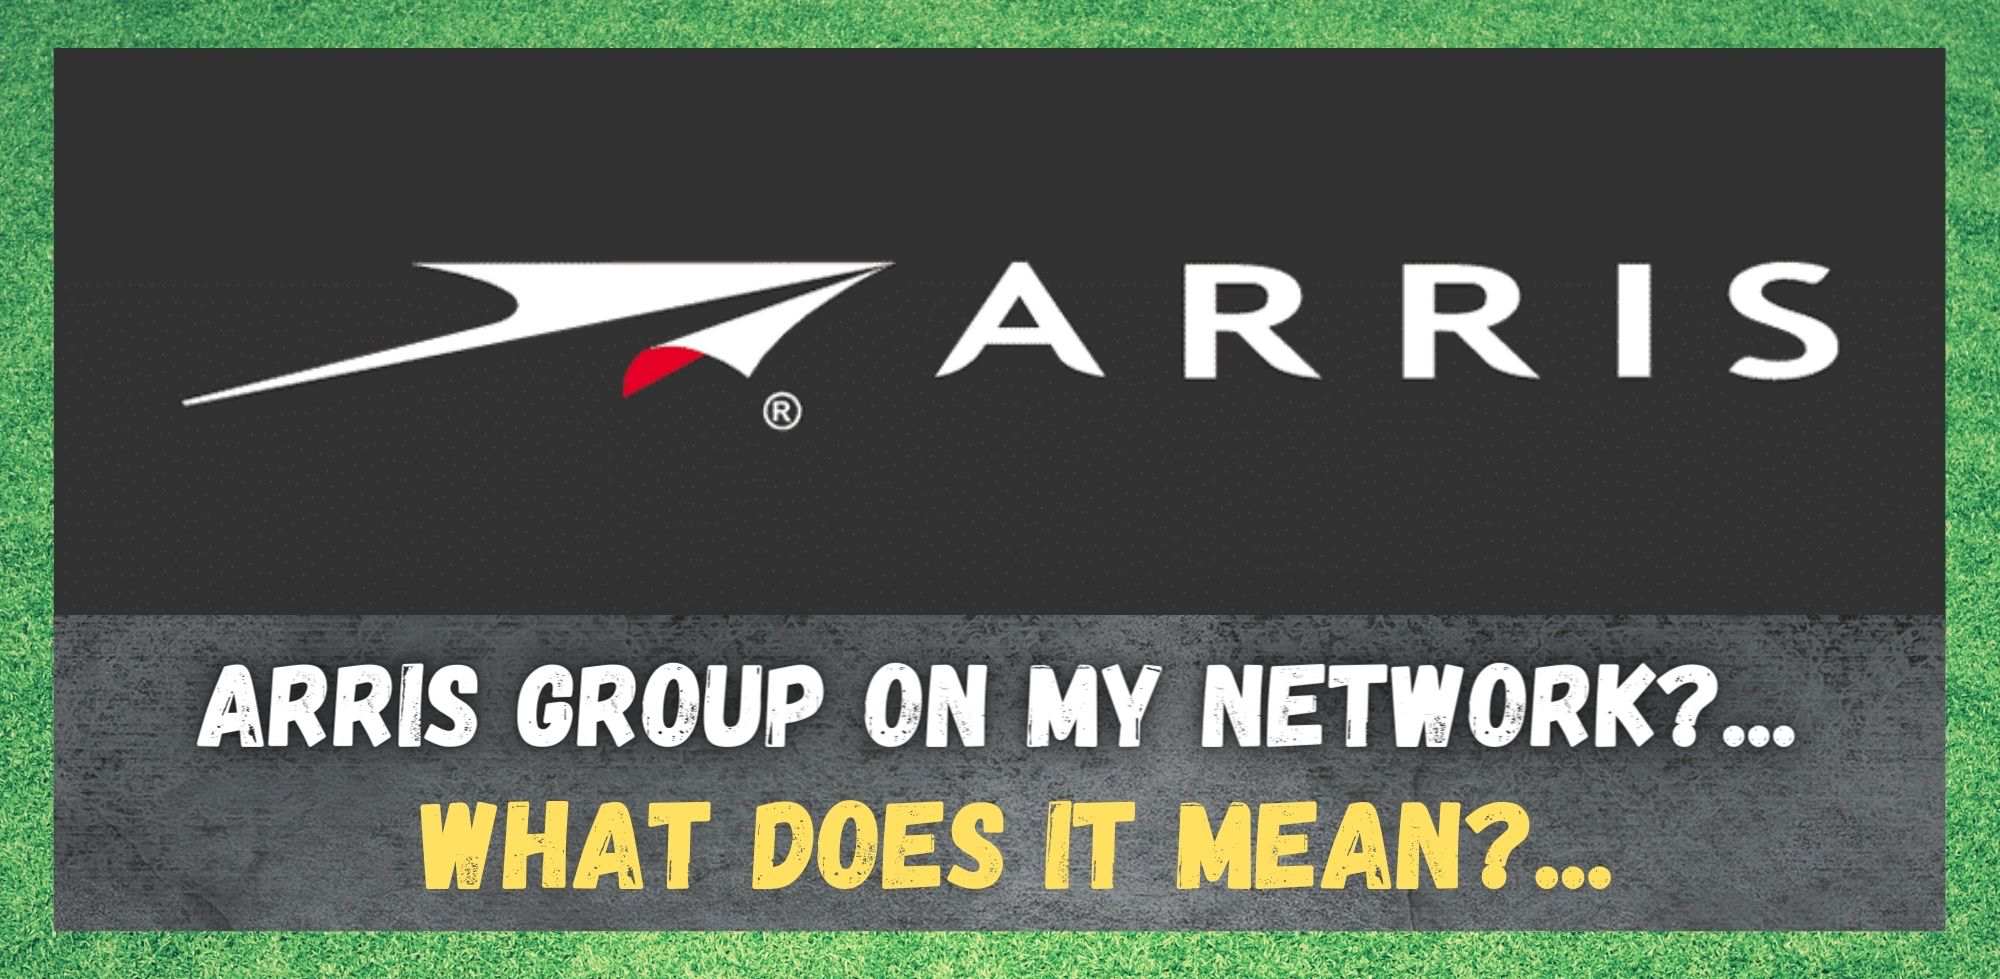 Skupina Arris v mojem omrežju: kaj to pomeni?